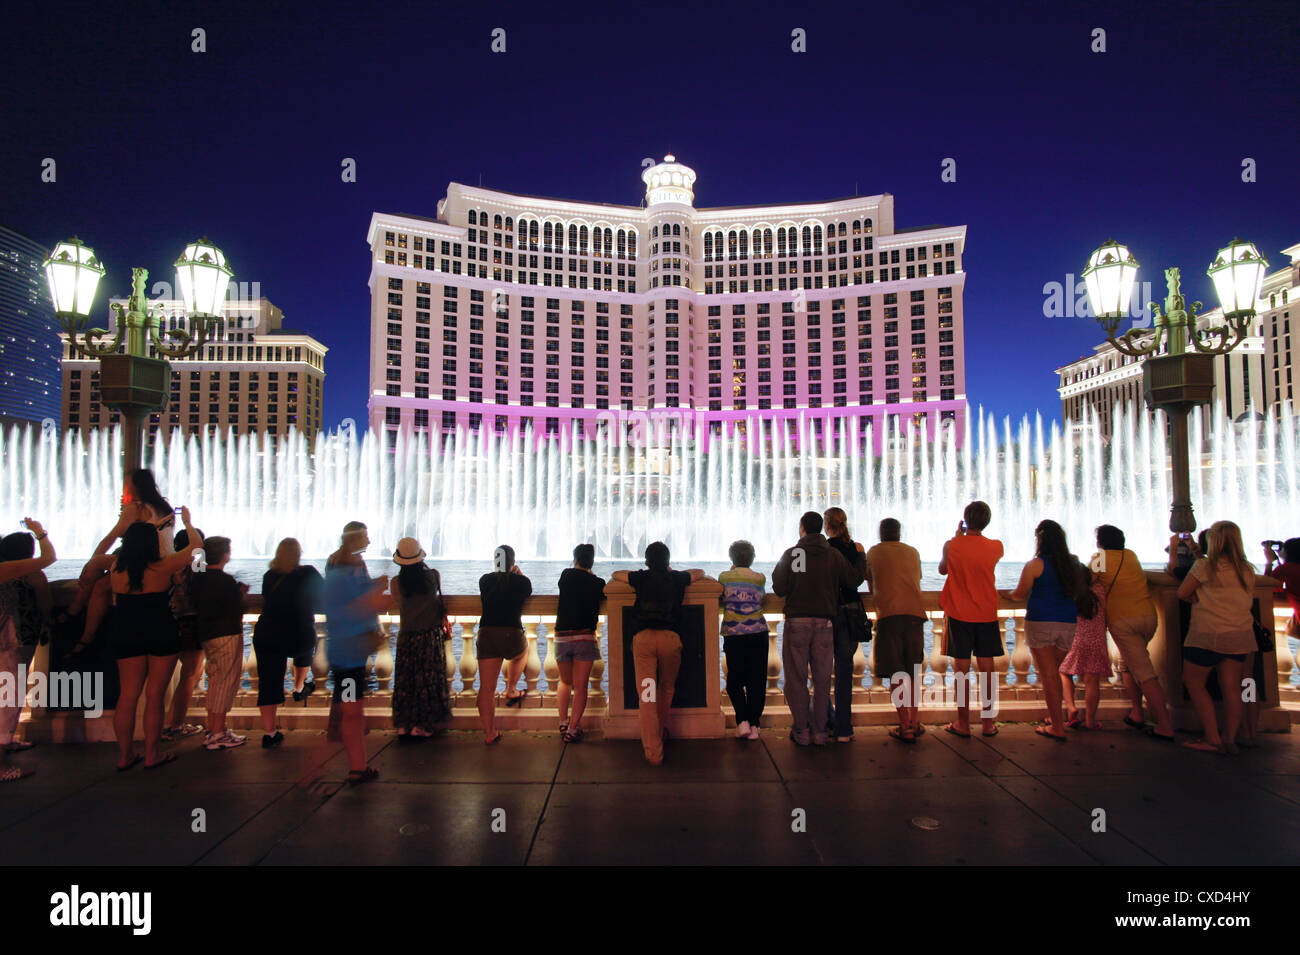 Springbrunnen des Bellagio, Bellagio Resort and Casino, Las Vegas, Nevada, Vereinigte Staaten von Amerika, Nordamerika Stockfoto